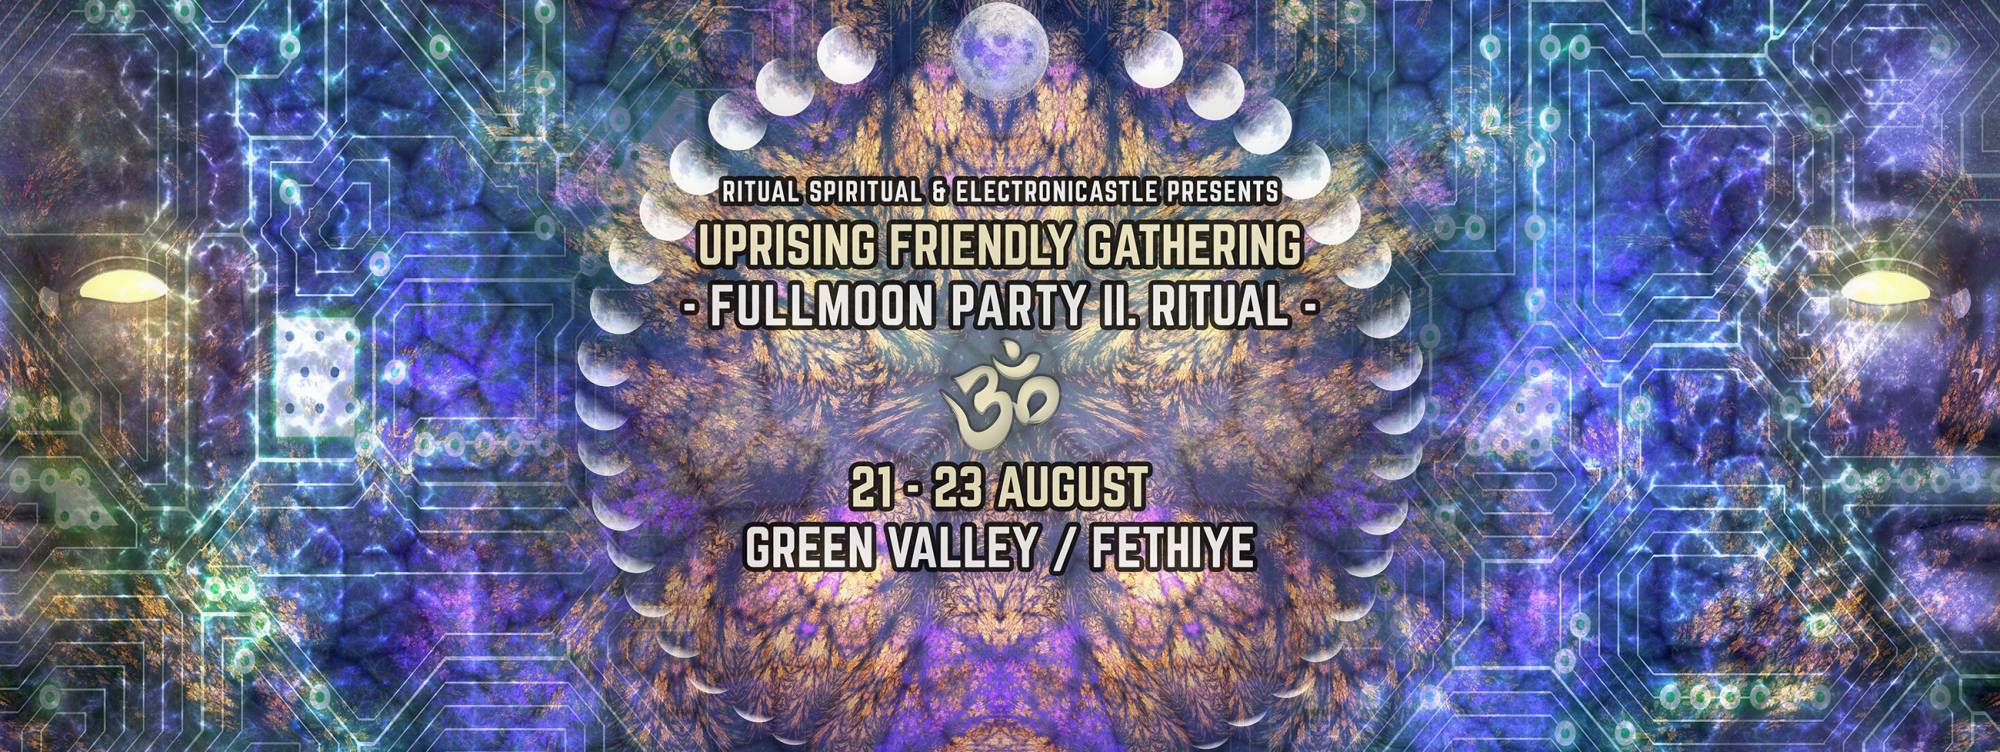 “Uprising Friendly Gathering” 21-23 Ağustos’ta Yeşil Vadi’de gerçekleşecek